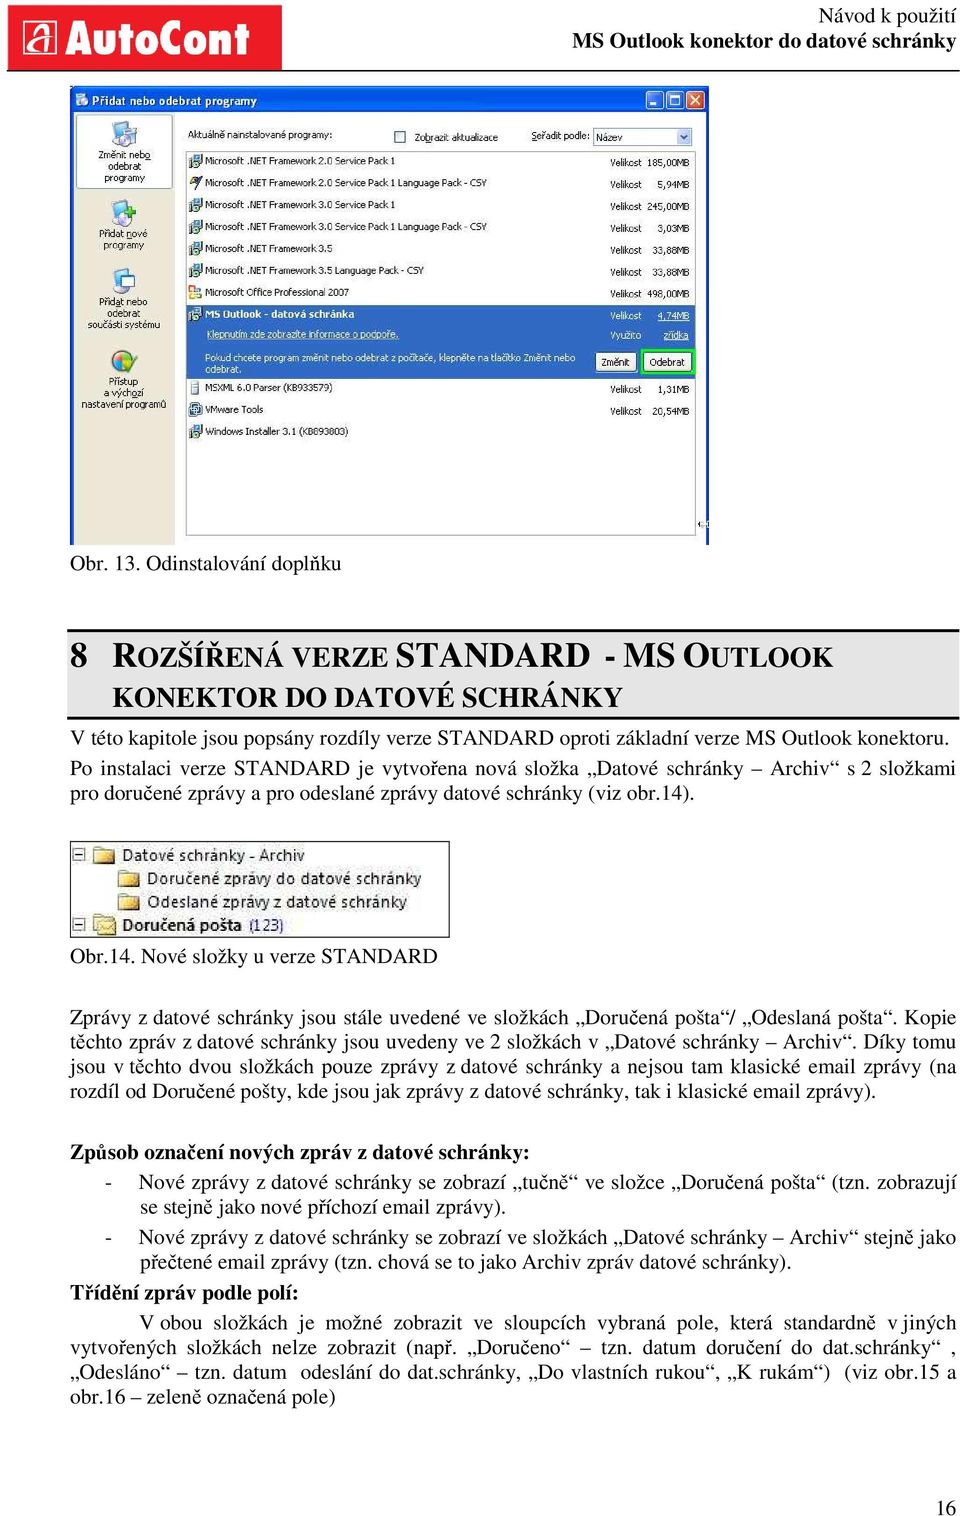 . Obr.14. Nové složky u verze STANDARD Zprávy z datové schránky jsou stále uvedené ve složkách Doručená pošta / Odeslaná pošta.